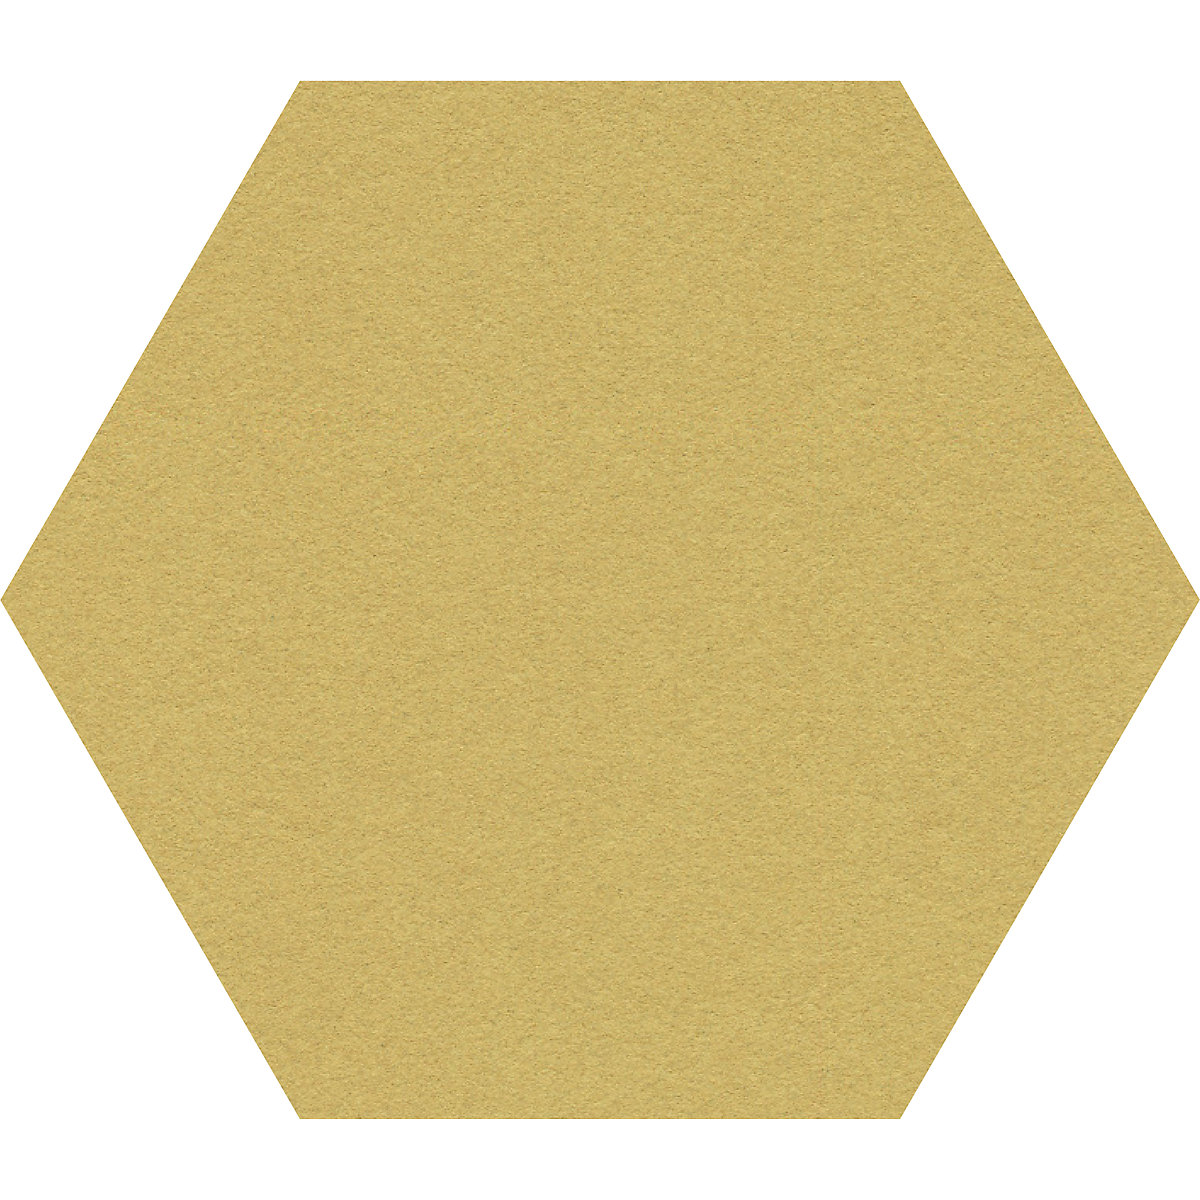 Tableau à épingles design hexagonal – Chameleon, liège, l x h 600 x 600 mm, jaune-37